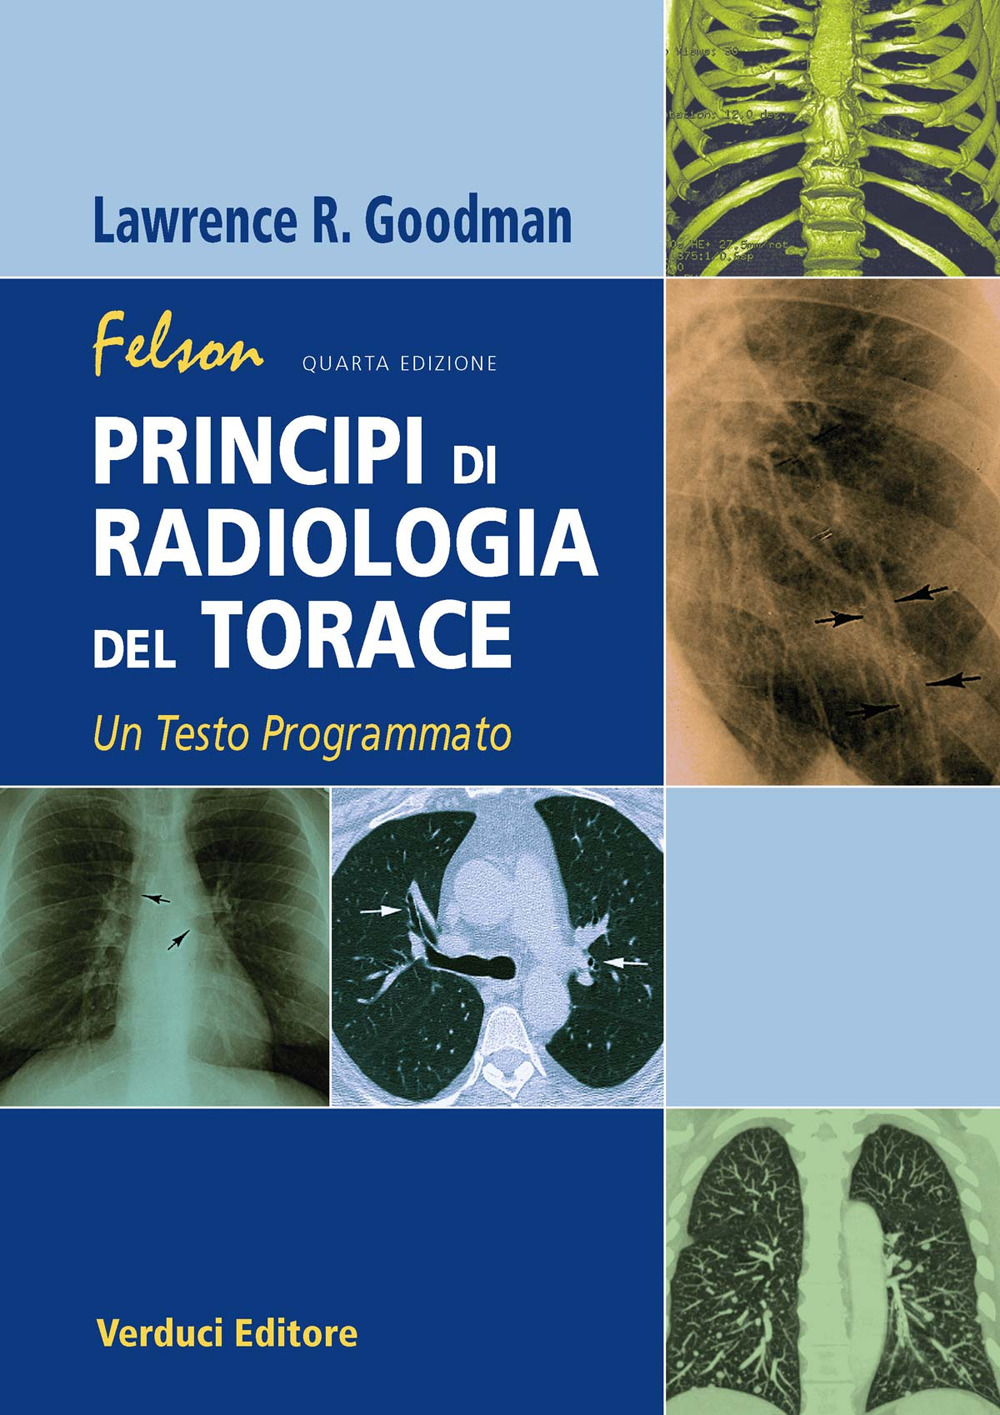 Libri Goodman Lawrence R. - Felson. Principi Di Radiologia Del Torace. Un Testo Programmato NUOVO SIGILLATO, EDIZIONE DEL 30/06/2018 SUBITO DISPONIBILE